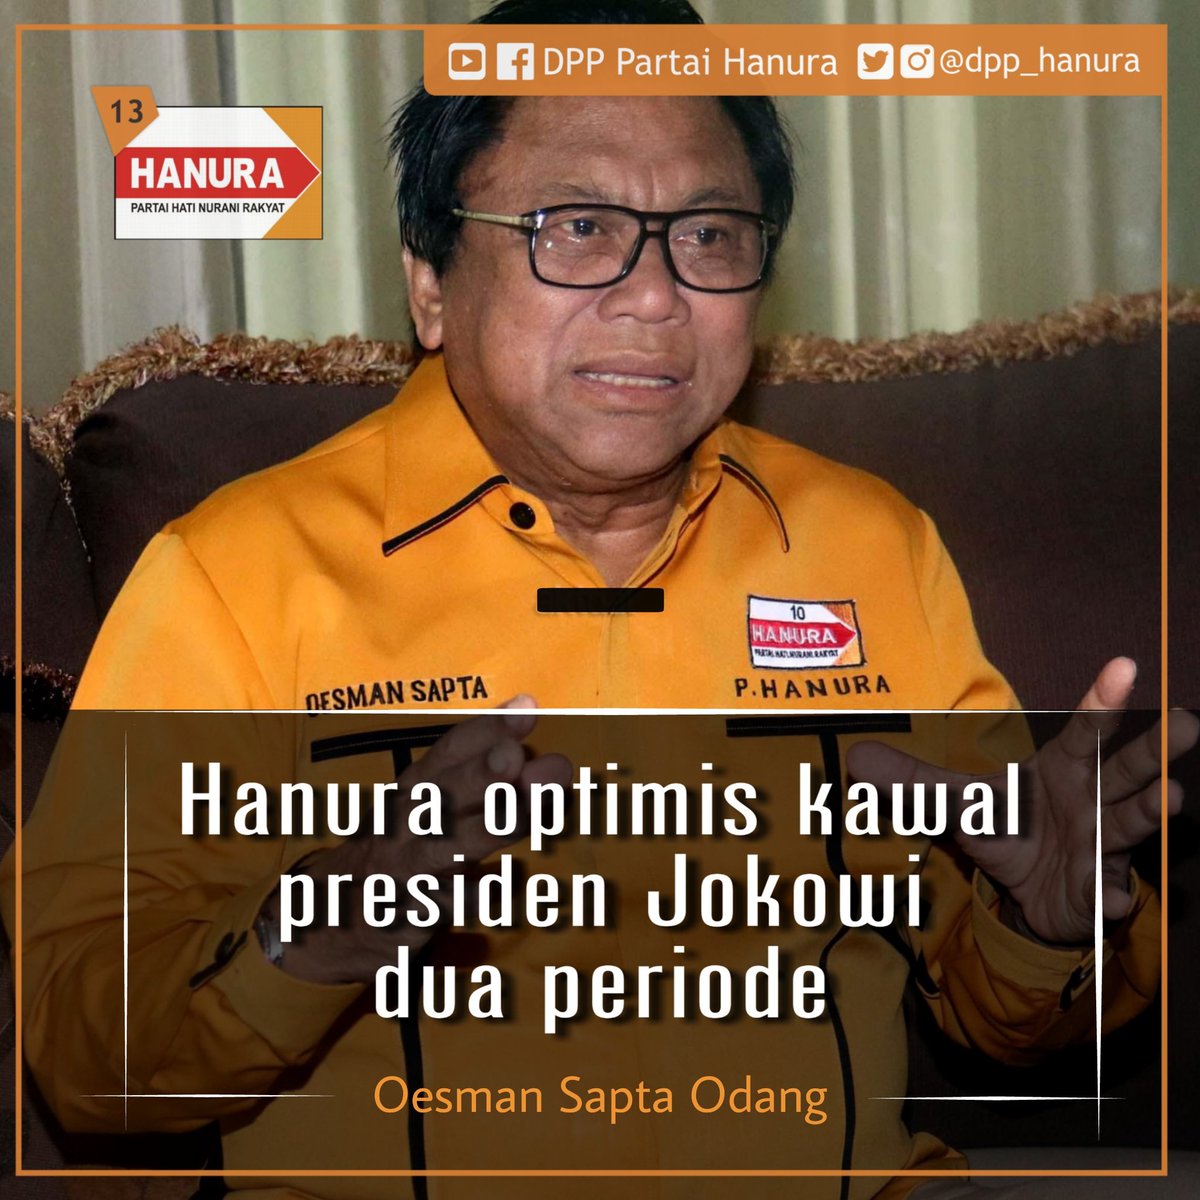 MARI KAWAL BERSAMA Ketua Umum Partai Hanura Oesman Sapta Odang konsisten optimis kawal Presiden Jokowi 2 Periode. Yuk KAWAL BERSAMA !! #JokoWinElection